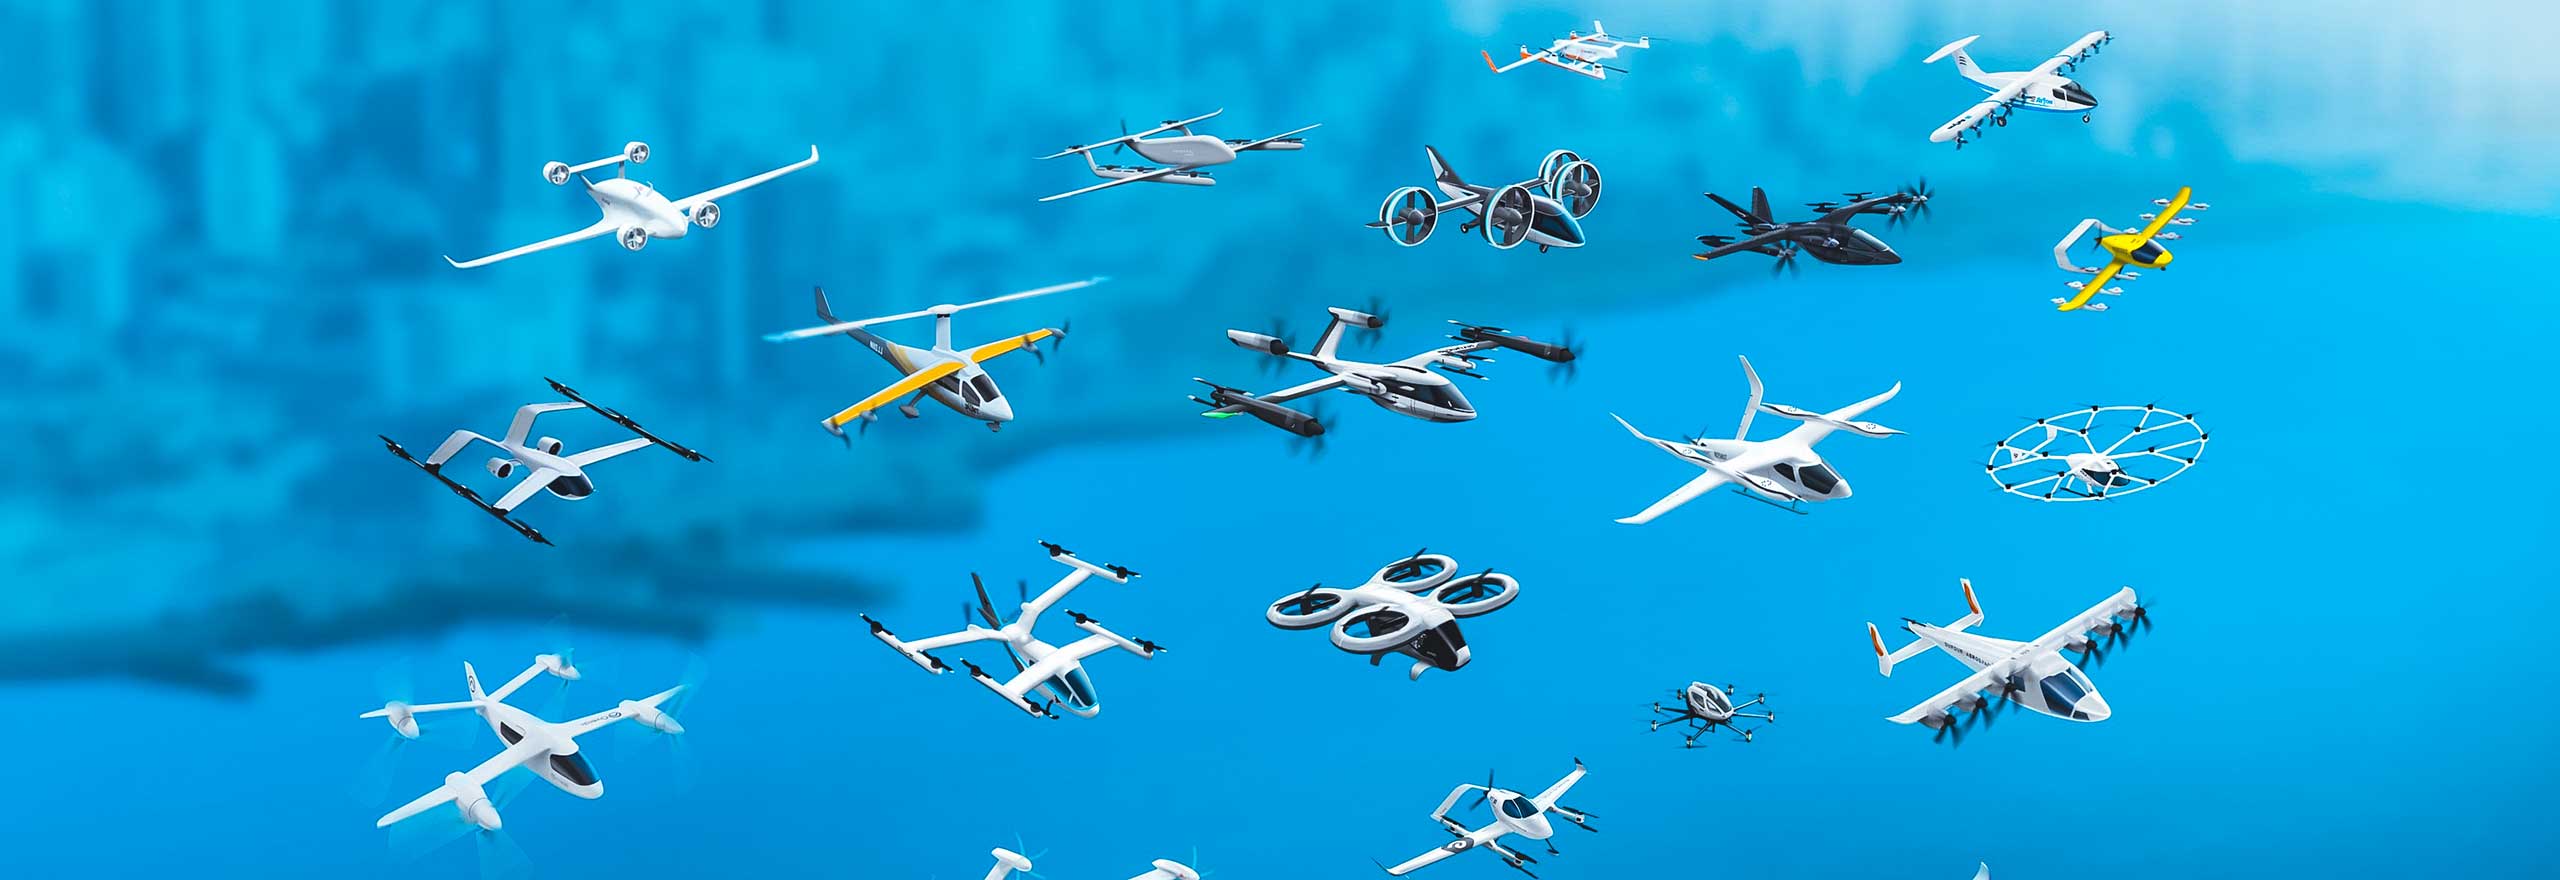 Diversi aeromobili e droni elettrici a decollo e atterraggio verticale (eVTOL) in volo dopo una simulazione di analisi strutturale in fase di sviluppo